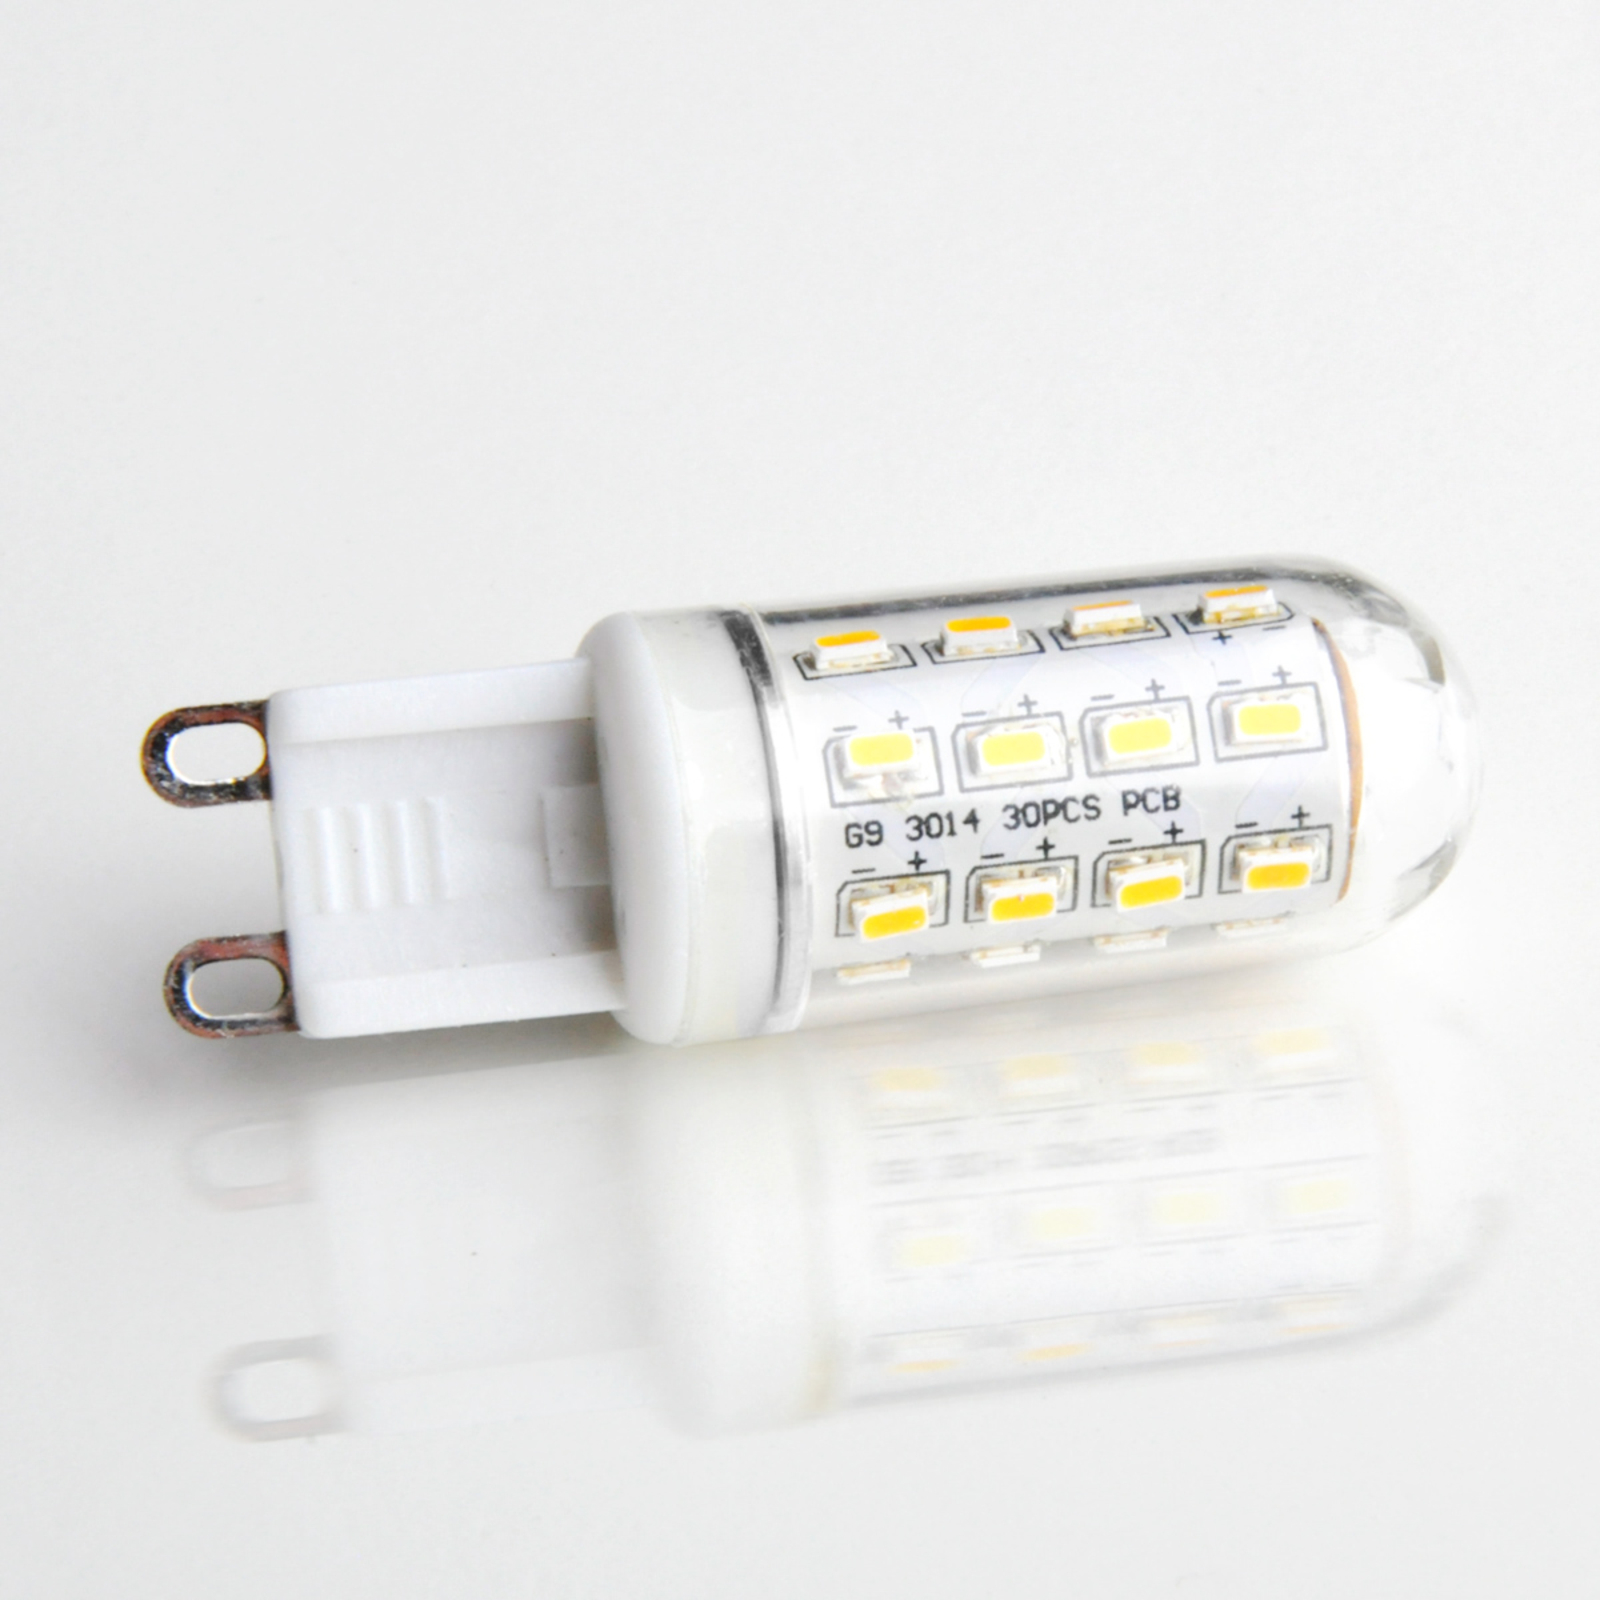 LED-lamppu kirkas G9 3W 830, putkimalli, kirkas